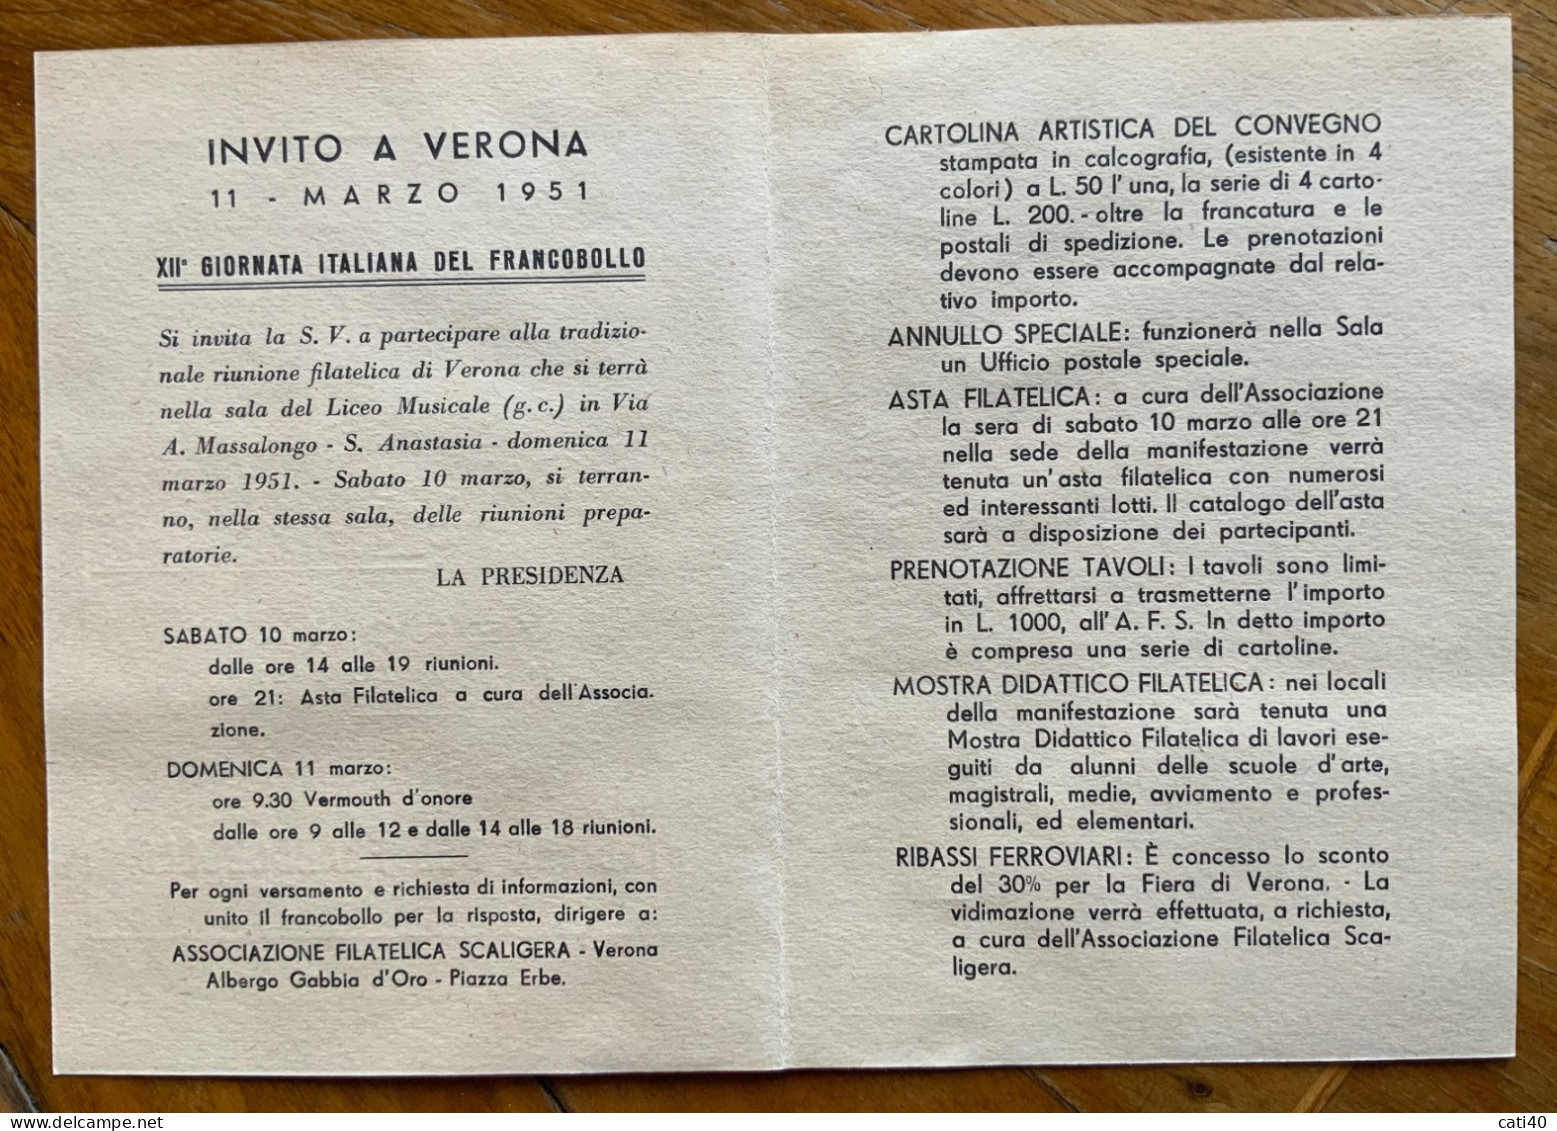 VERONA 1951 - XII GIORNATA ITALIANA DEL FRANCOBOLLO - CARTOLINA PROGRAMMA - Manifestazioni